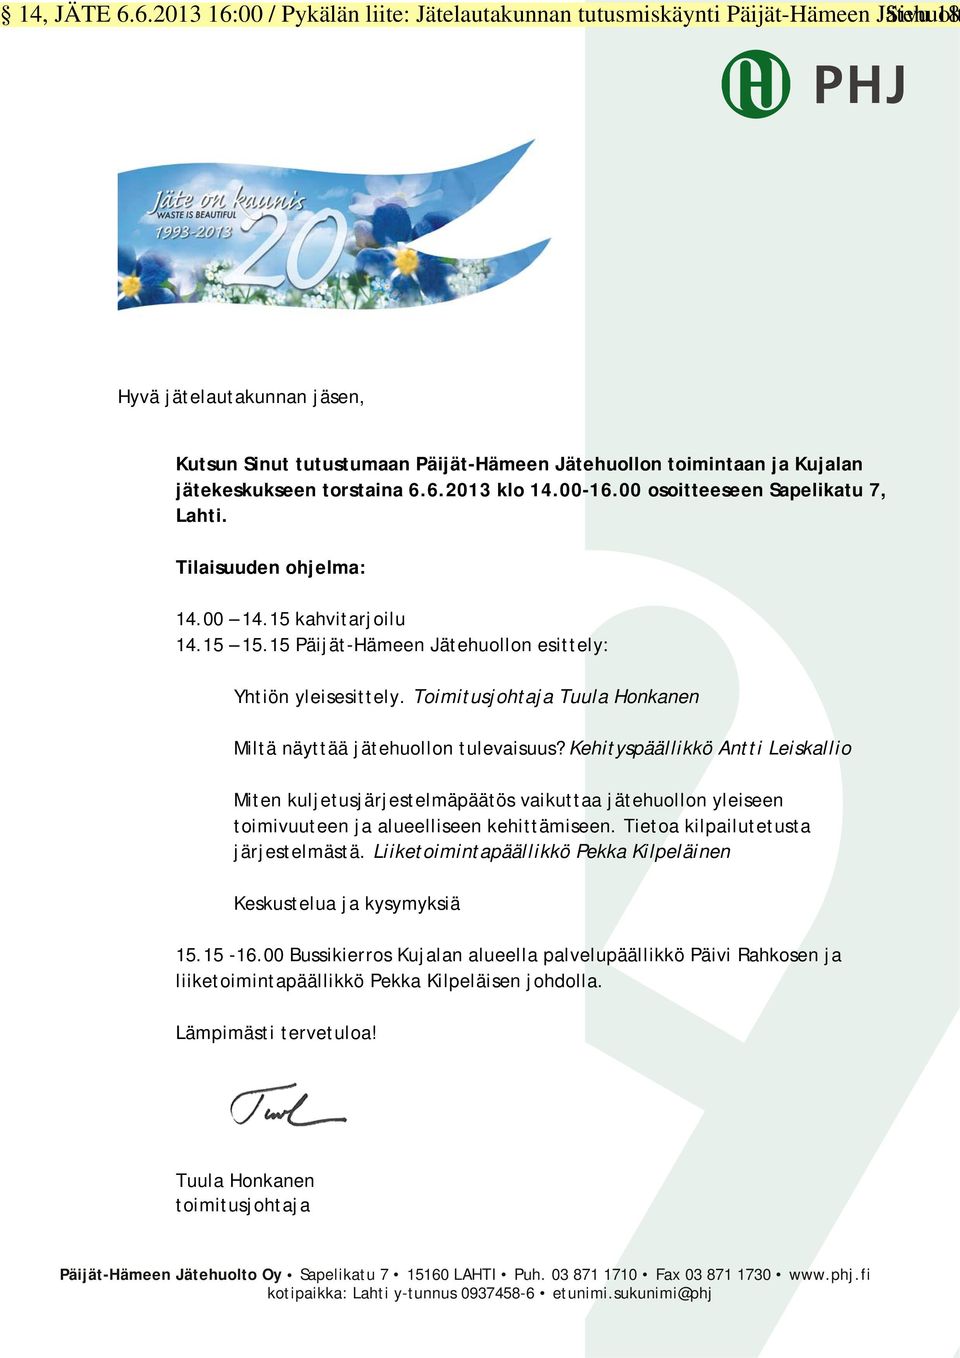 jätekeskukseen torstaina 6.6.2013 klo 14.00-16.00 osoitteeseen Sapelikatu 7, Lahti. Tilaisuuden ohjelma: 14.00 14.15 kahvitarjoilu 14.15 15.15 Päijät-Hämeen Jätehuollon esittely: Yhtiön yleisesittely.